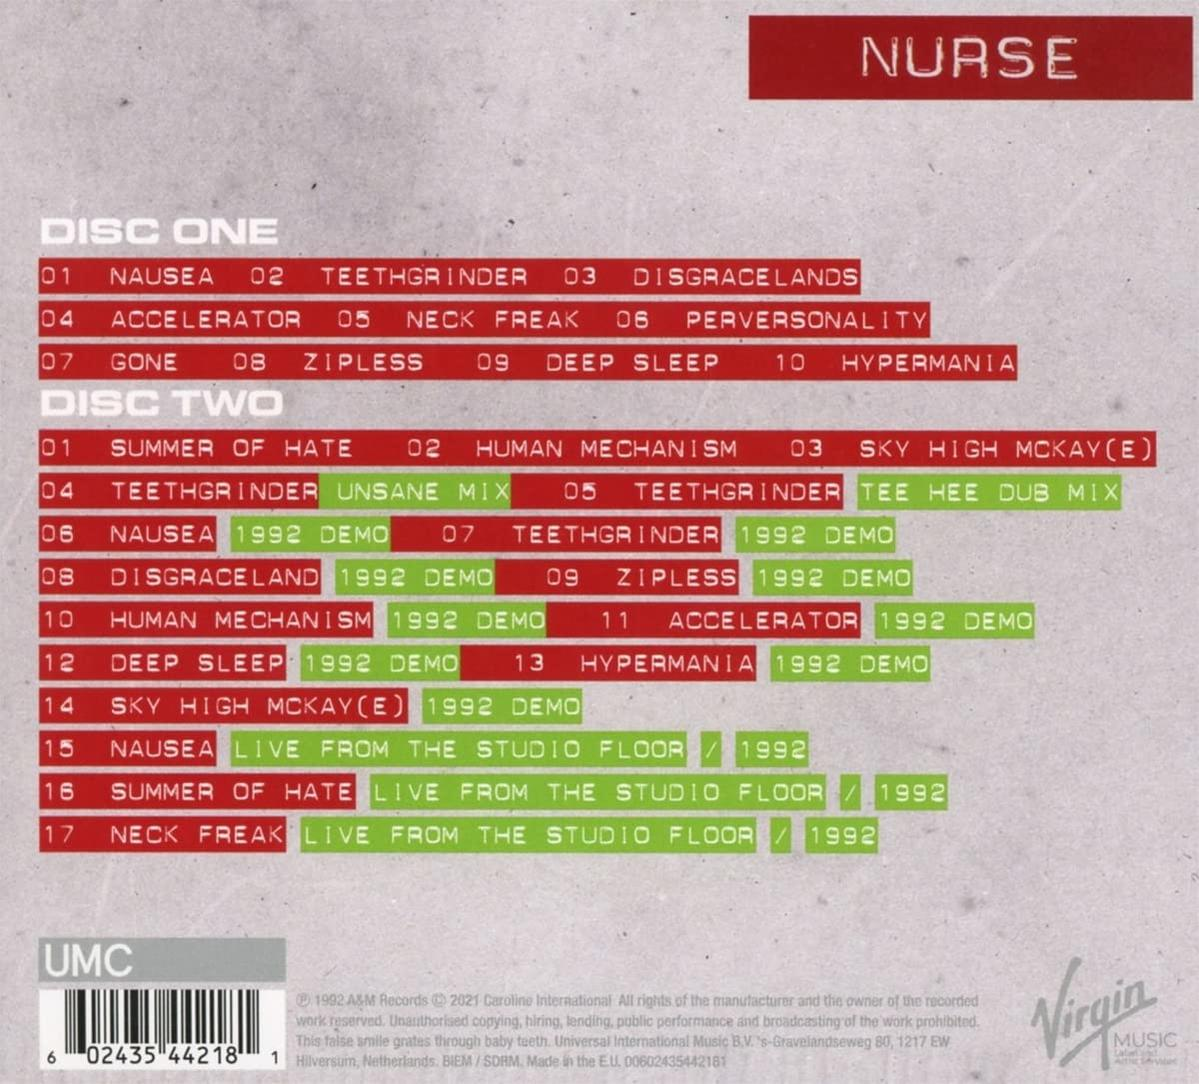 - - Therapy? (CD) Nurse